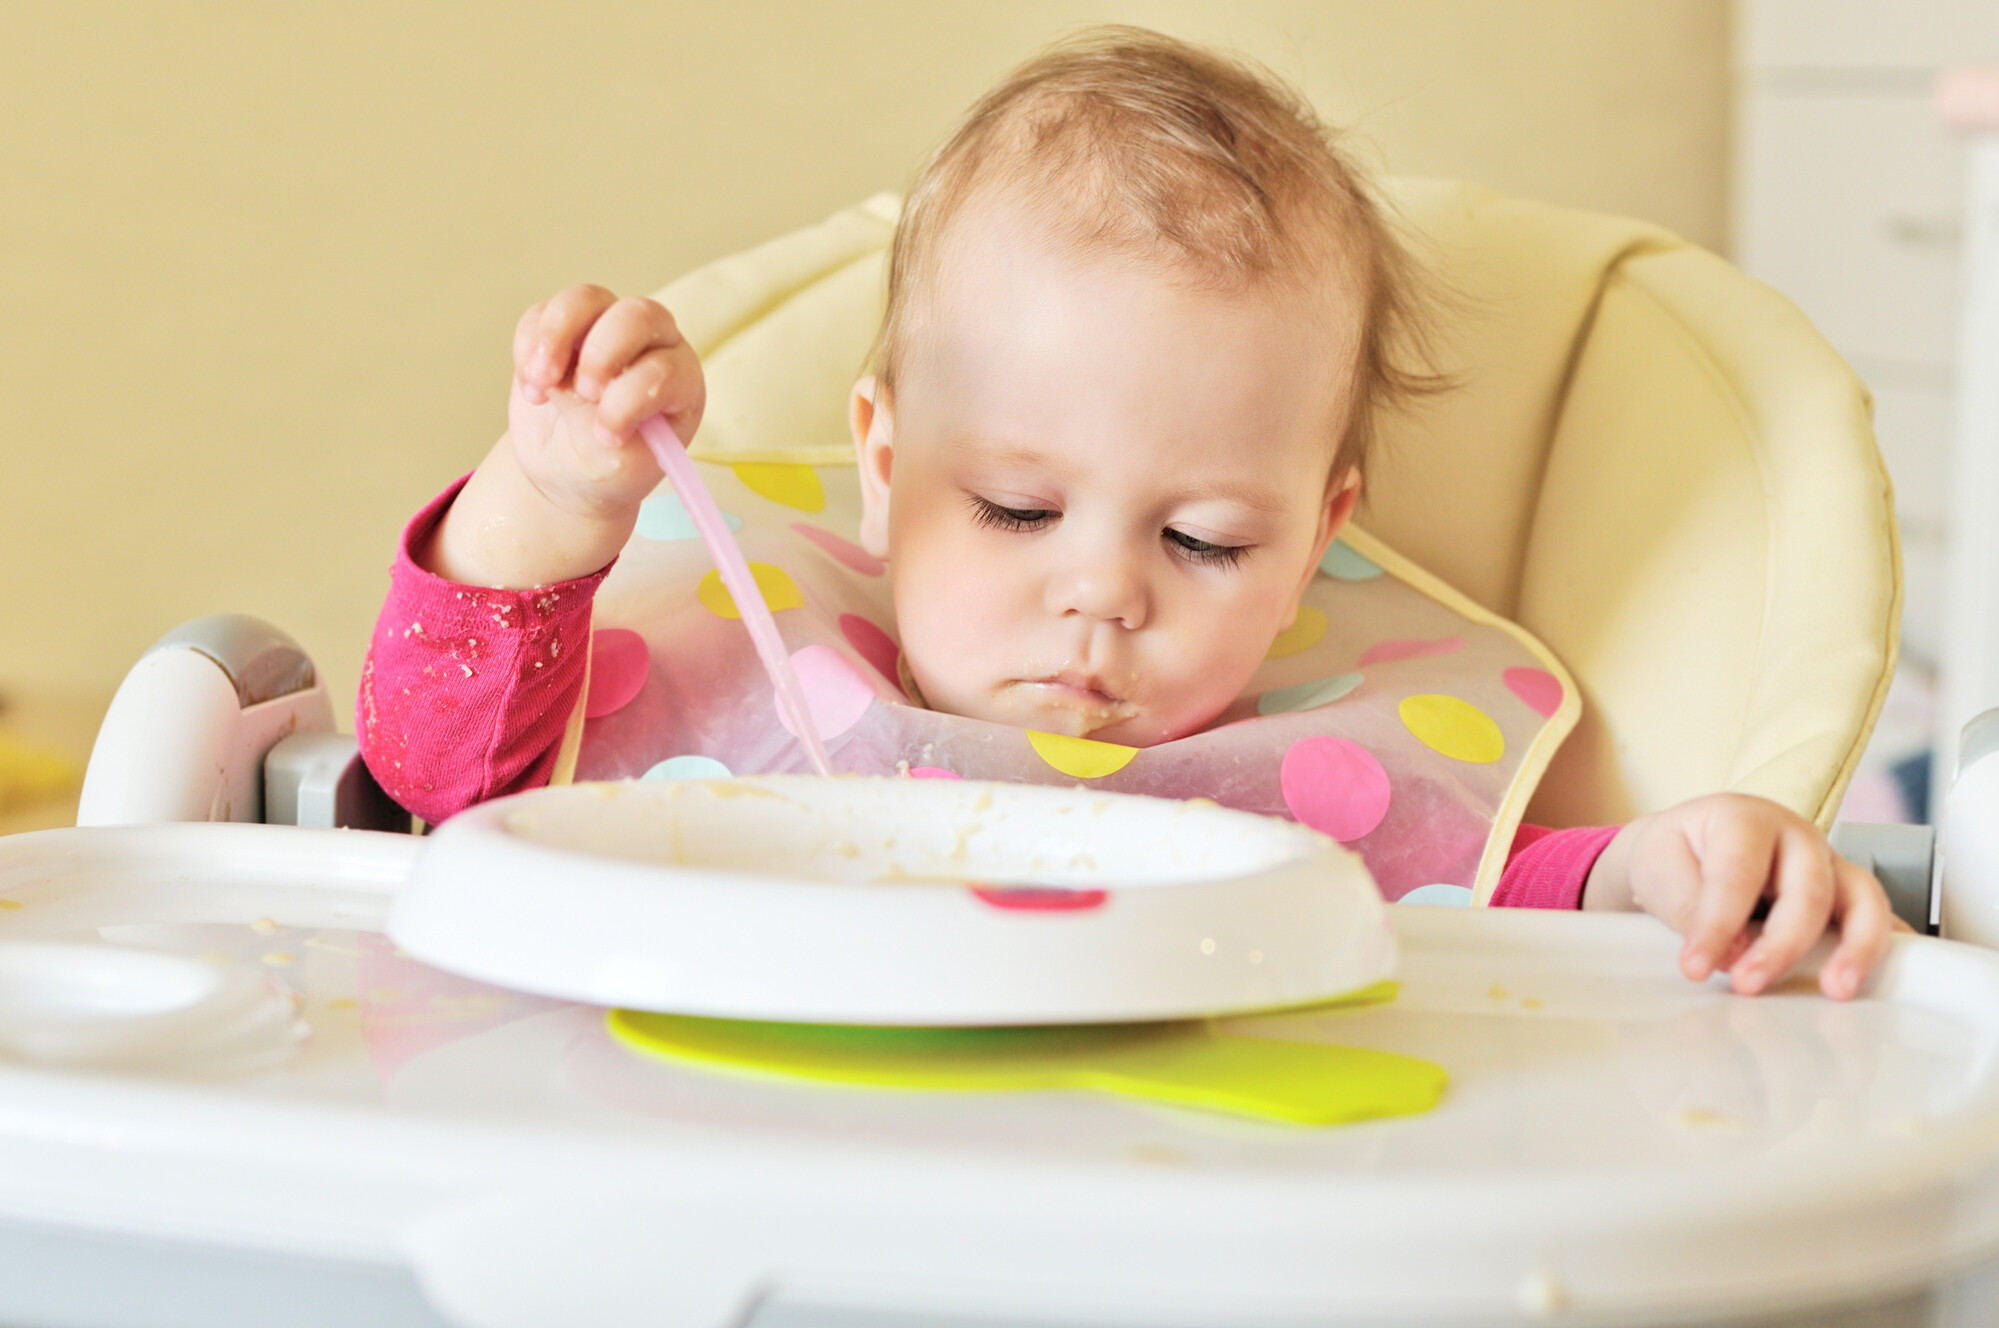 Mon enfant refuse de manger : 5 situations à la loupe